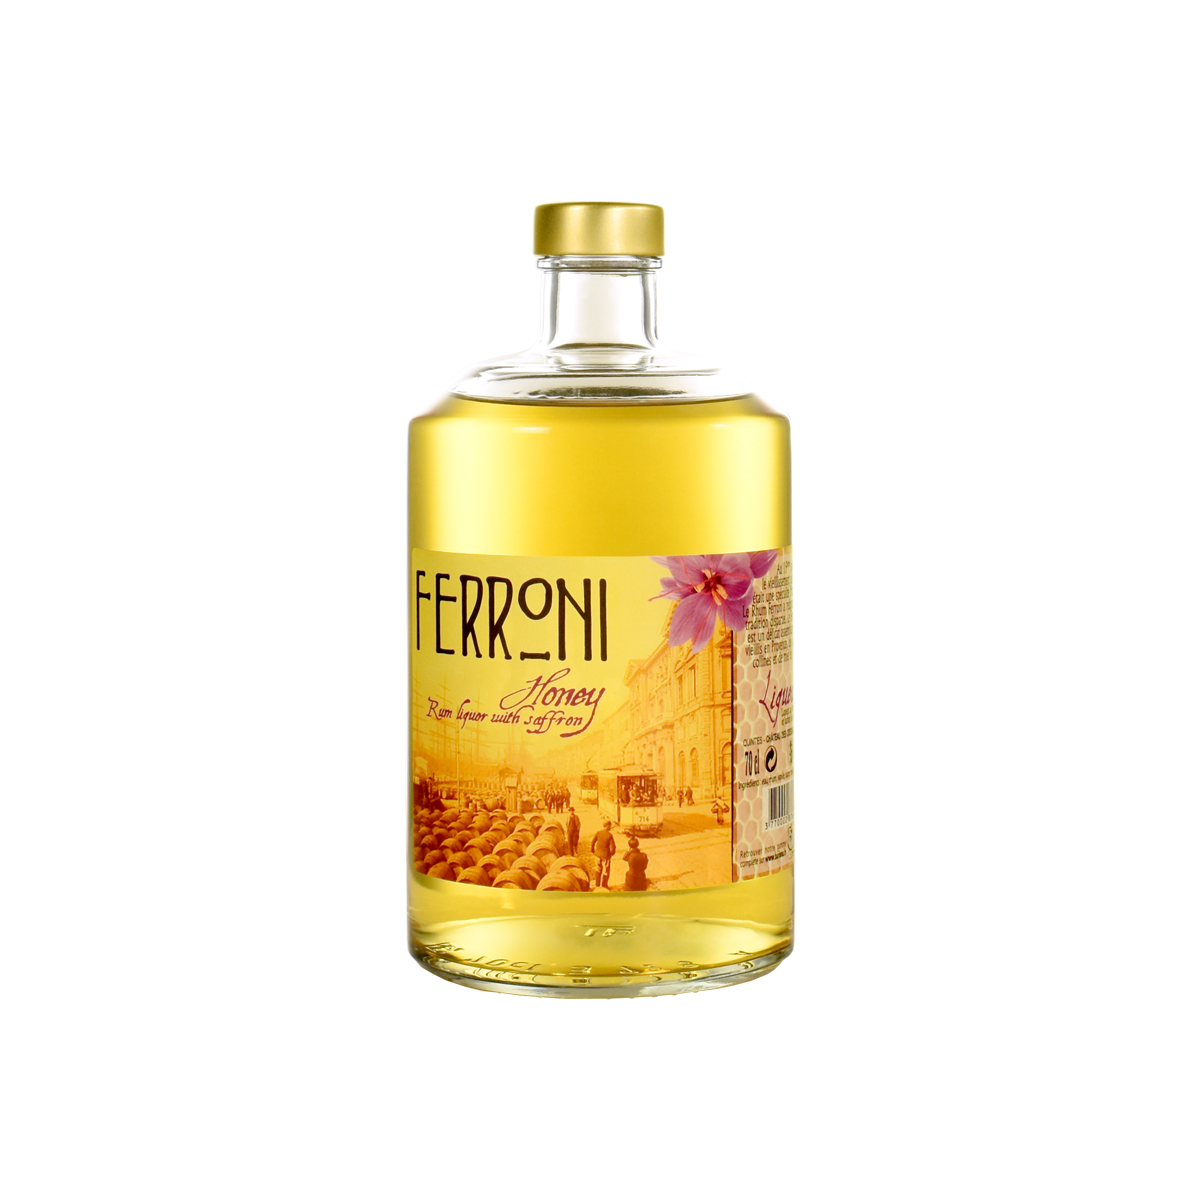 Ferroni Honey Rhum 35 %